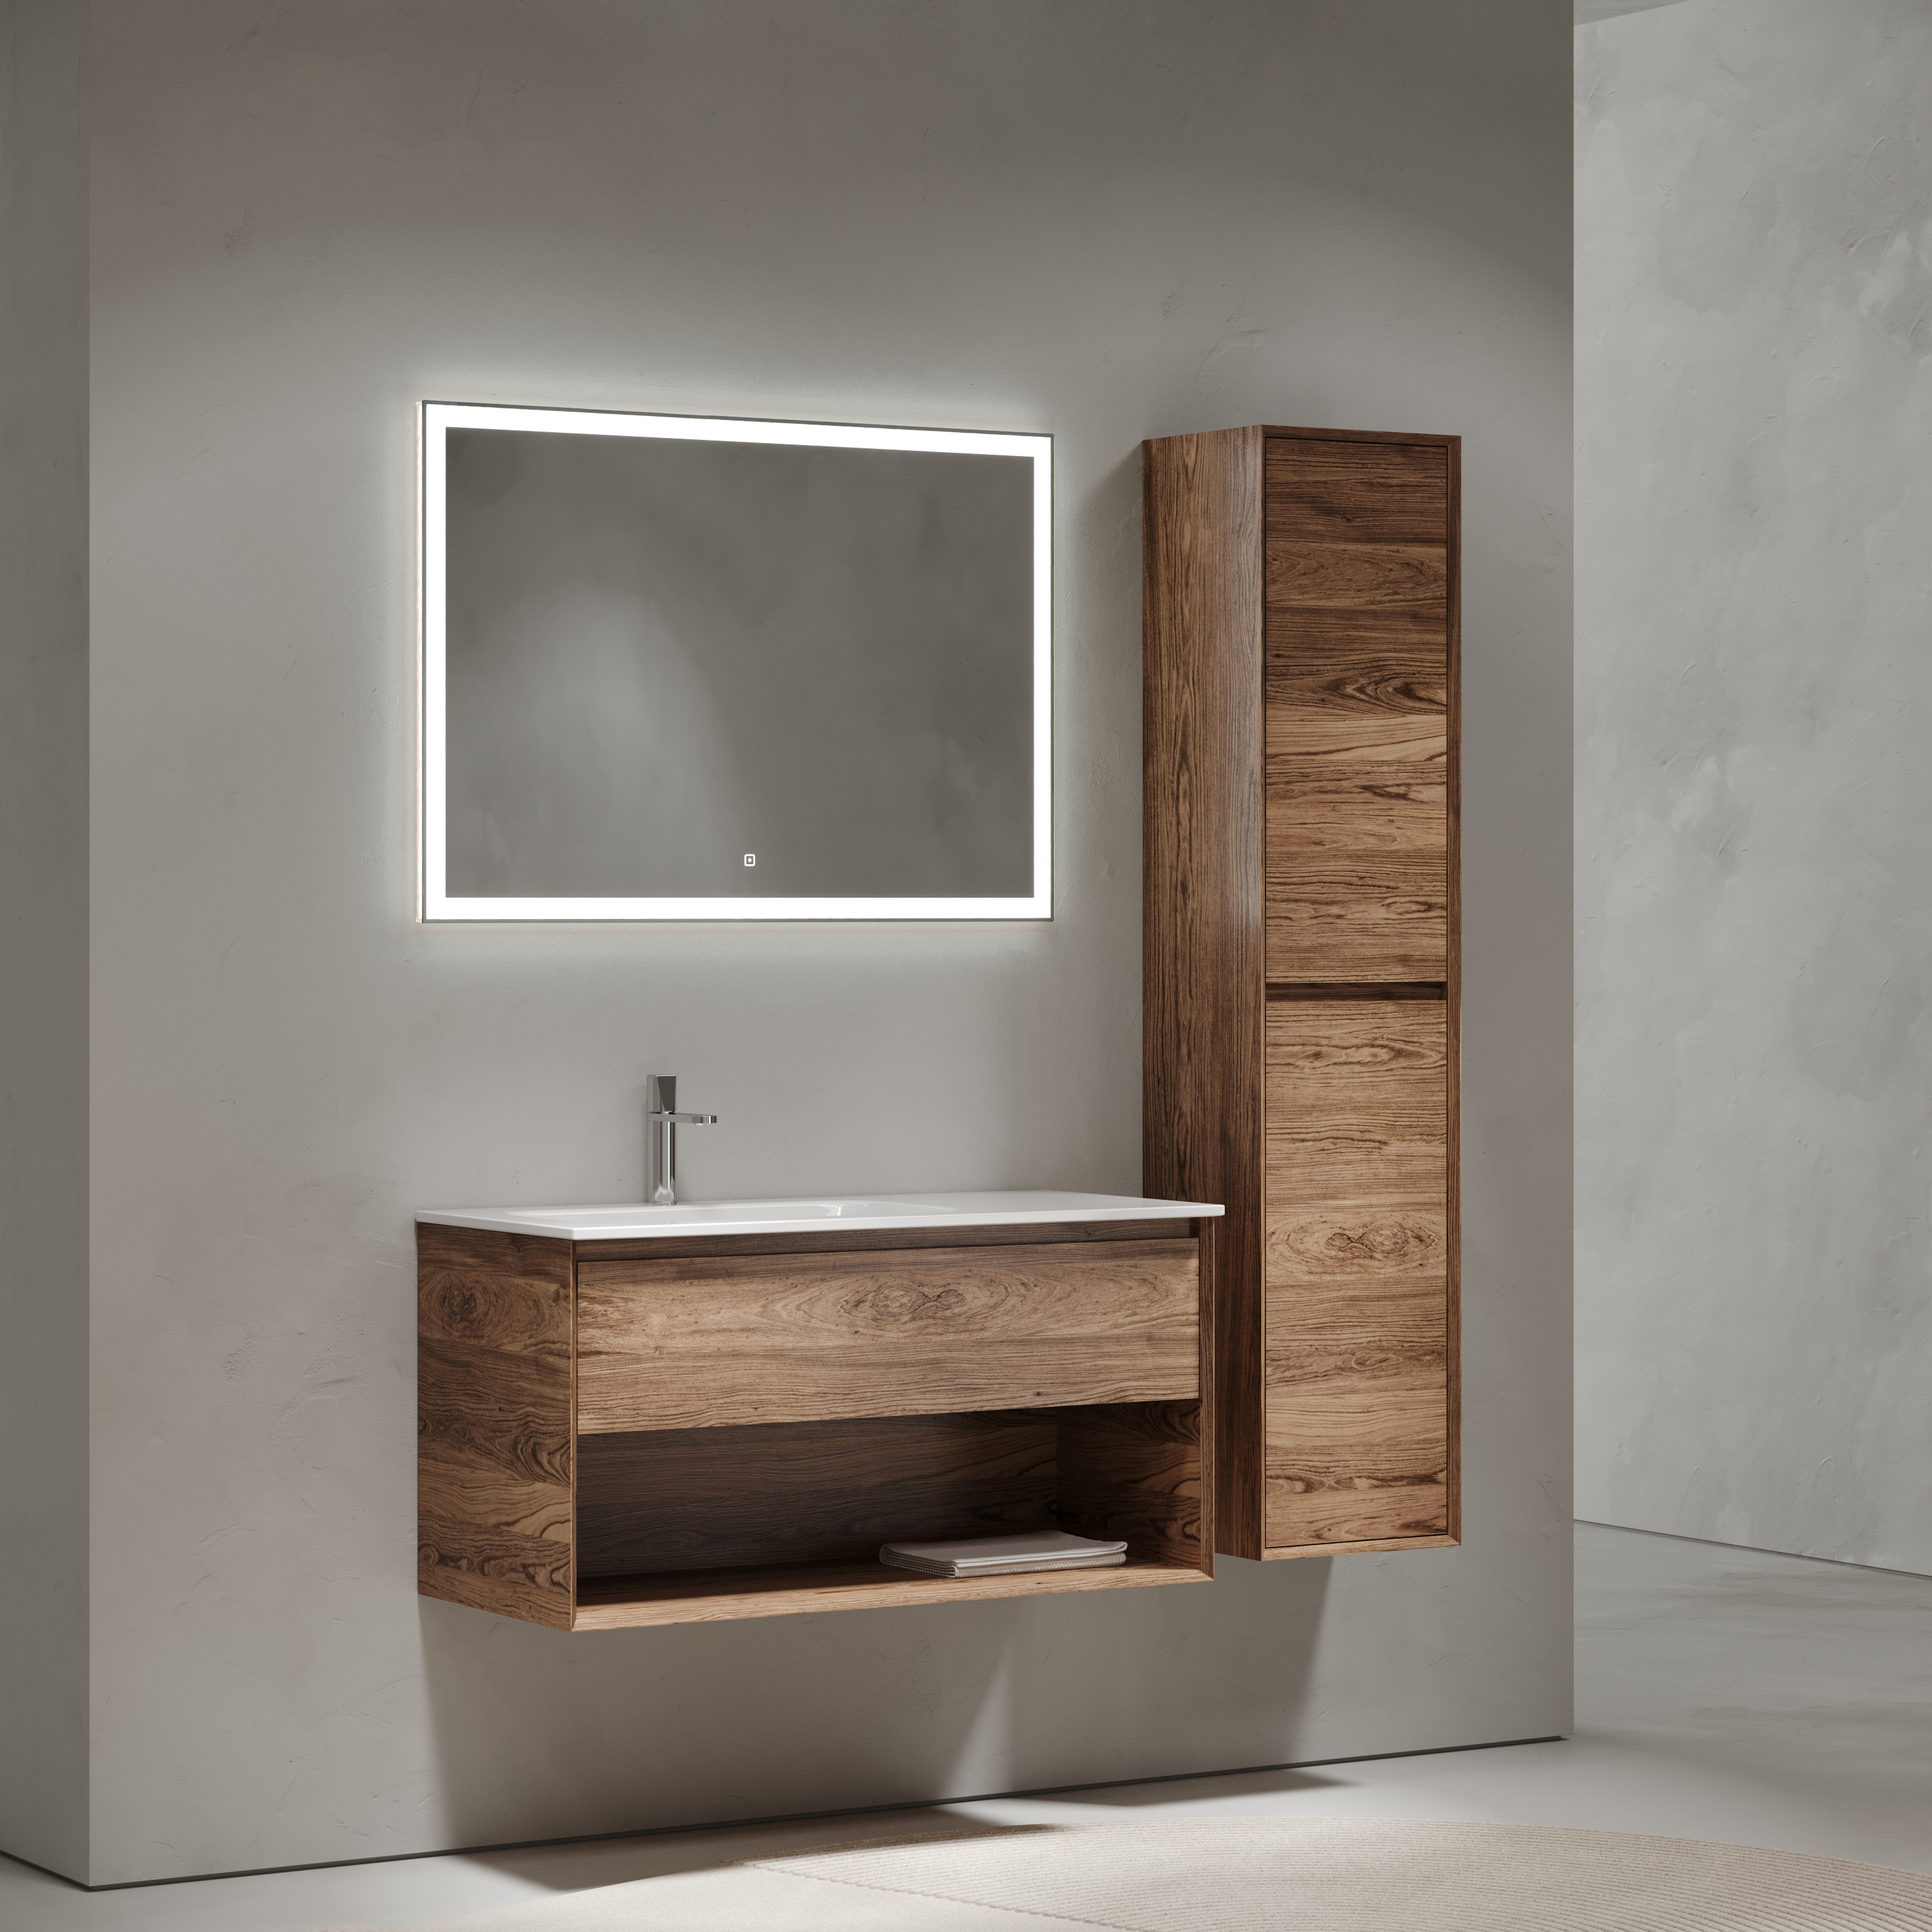 Мебель для ванной комнаты Sancos Marmi 1.0 100 см дуб чарльстон, левая, цвет коричневый MR1.0100LECH - фото 2